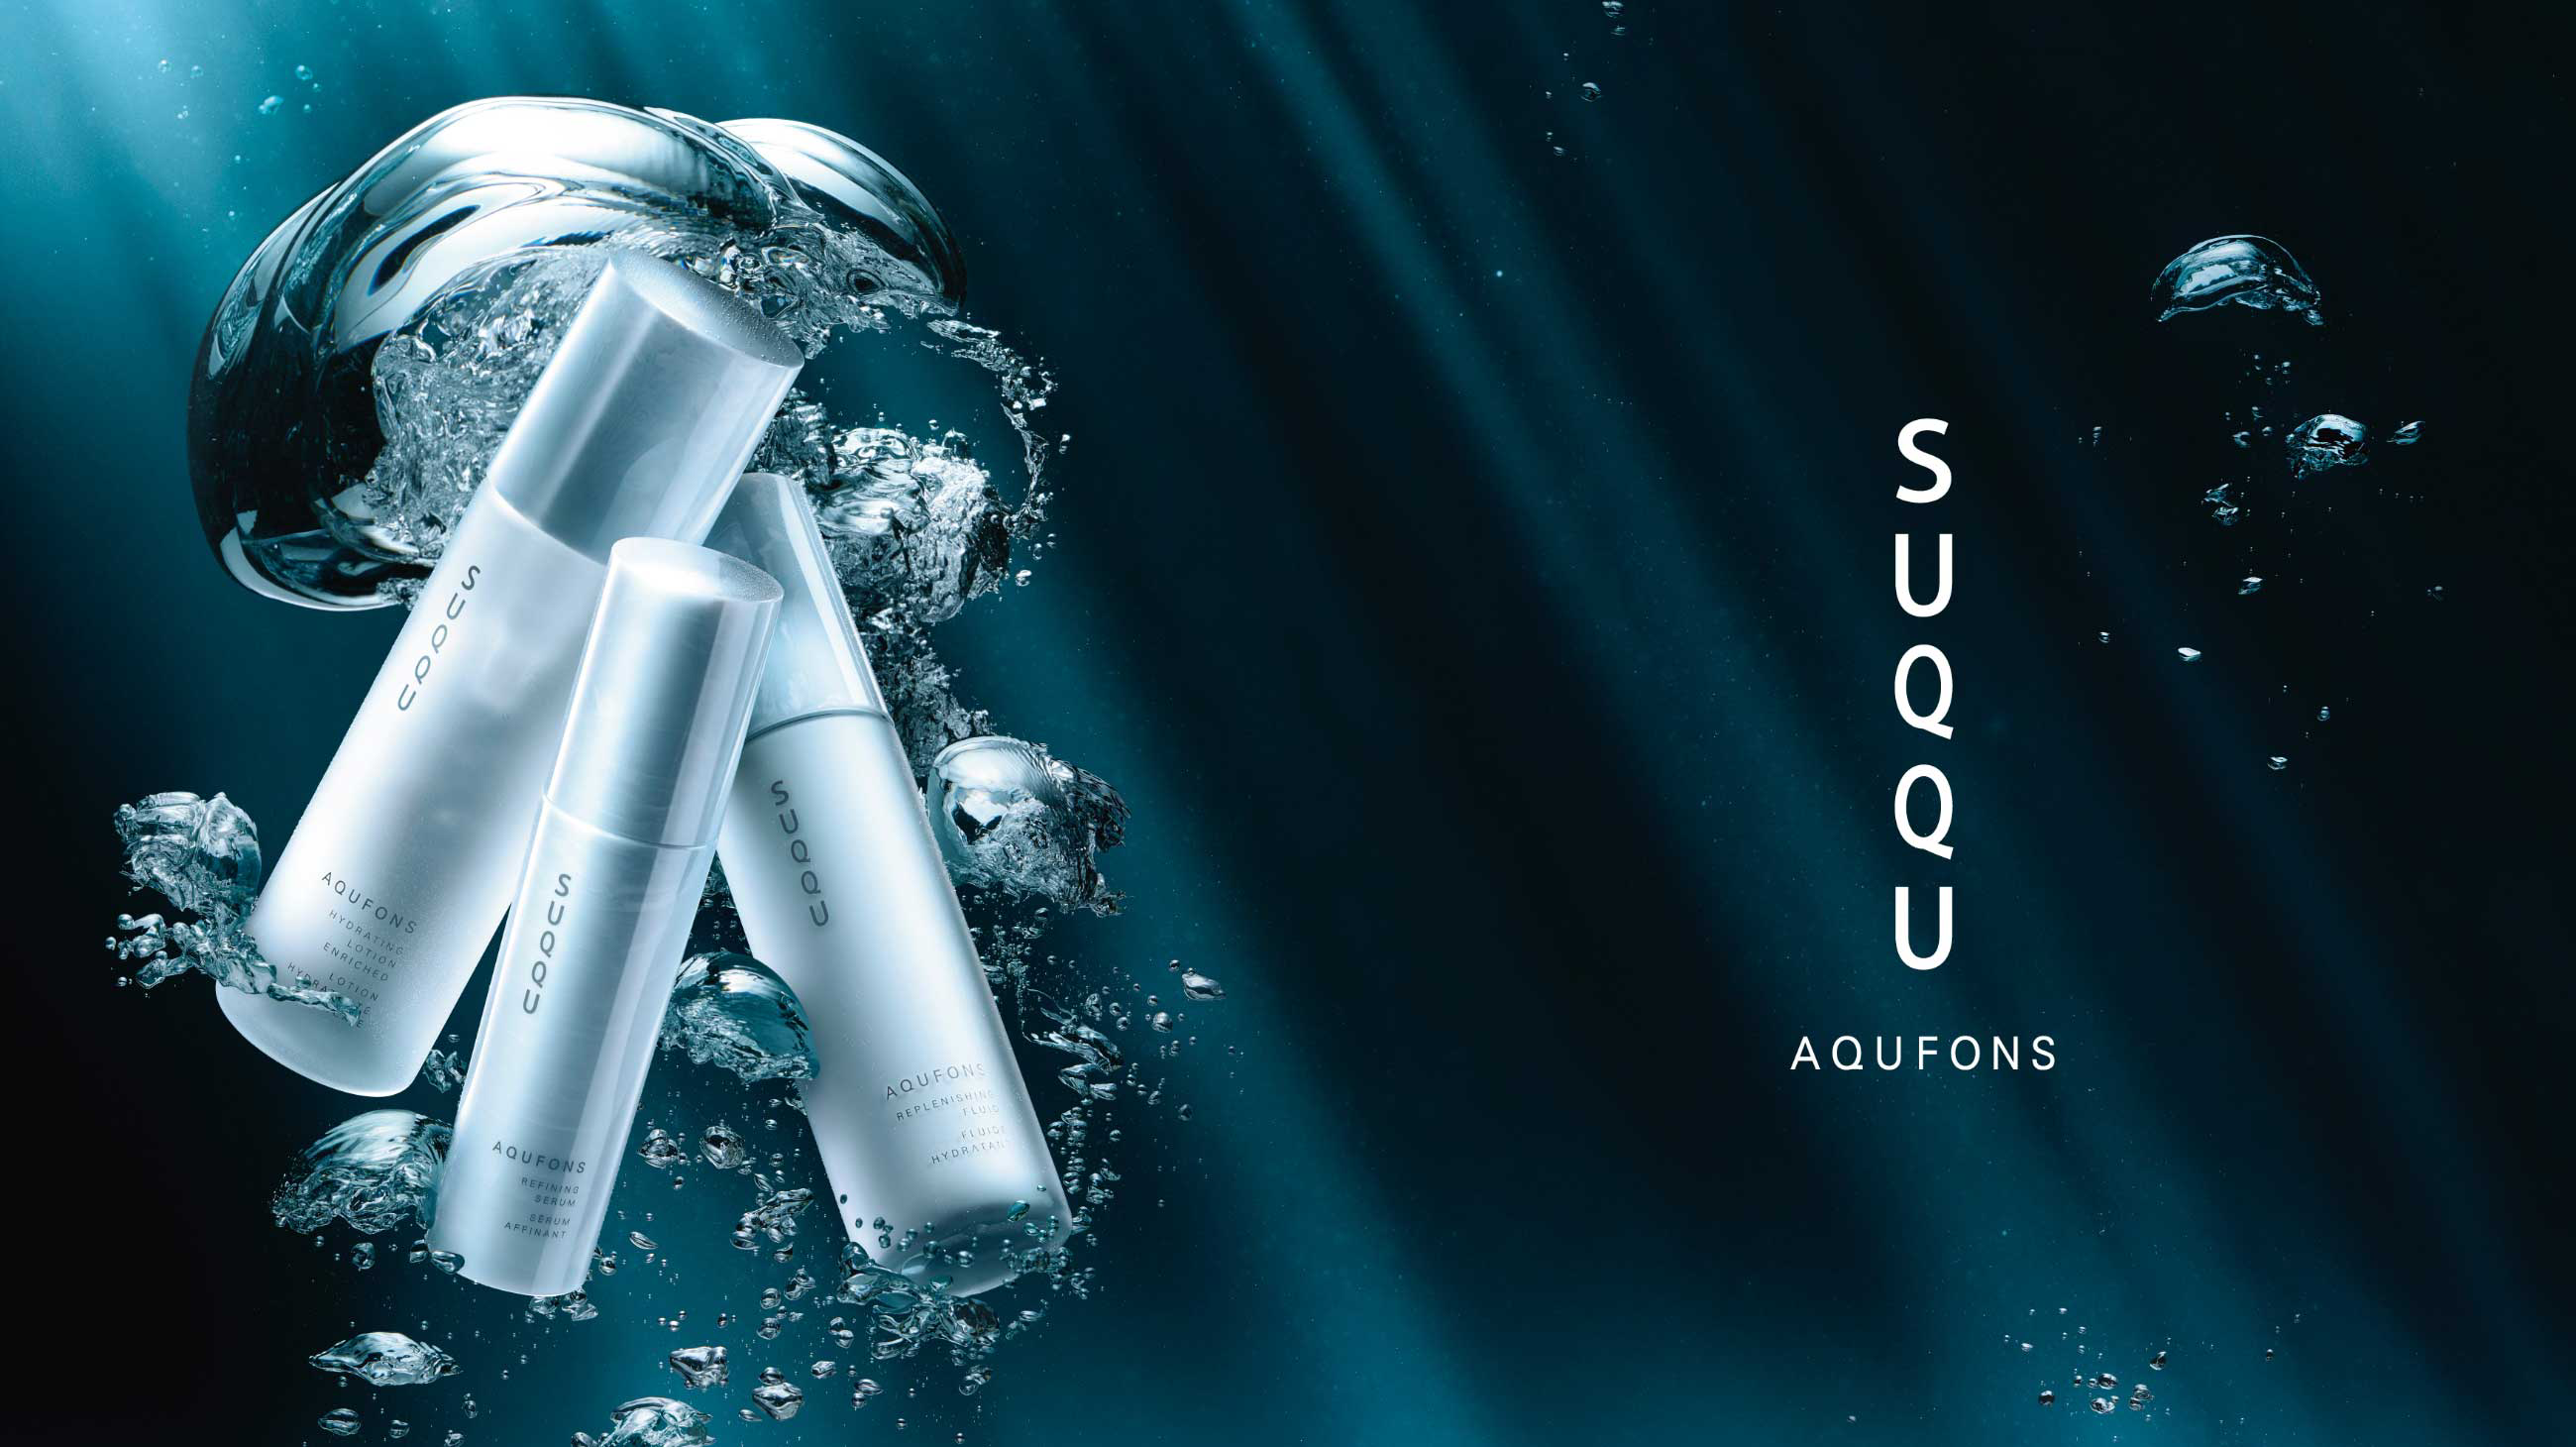 AQUFONS | SUQQU ONLINE SHOP